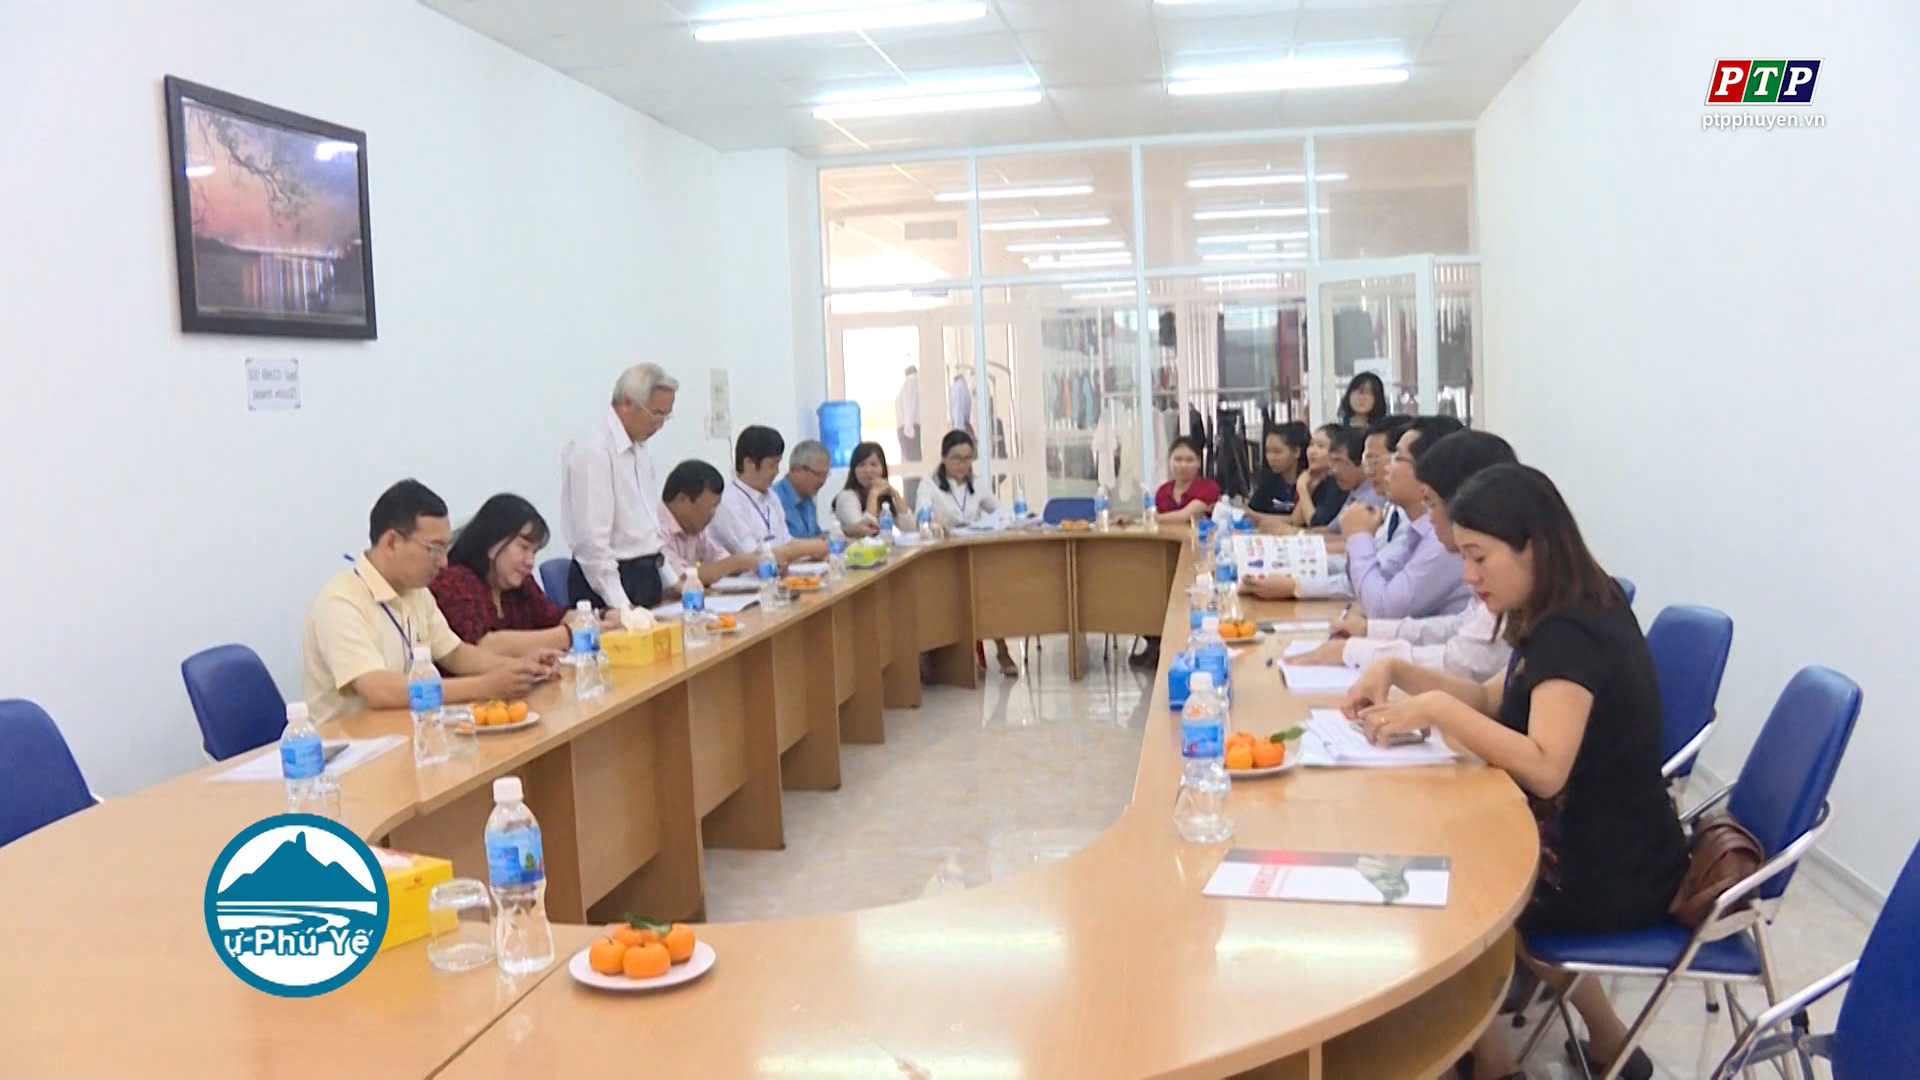 Phú Yên: 3 doanh nghiệp được đề cử giải Sao Vàng đất Việt